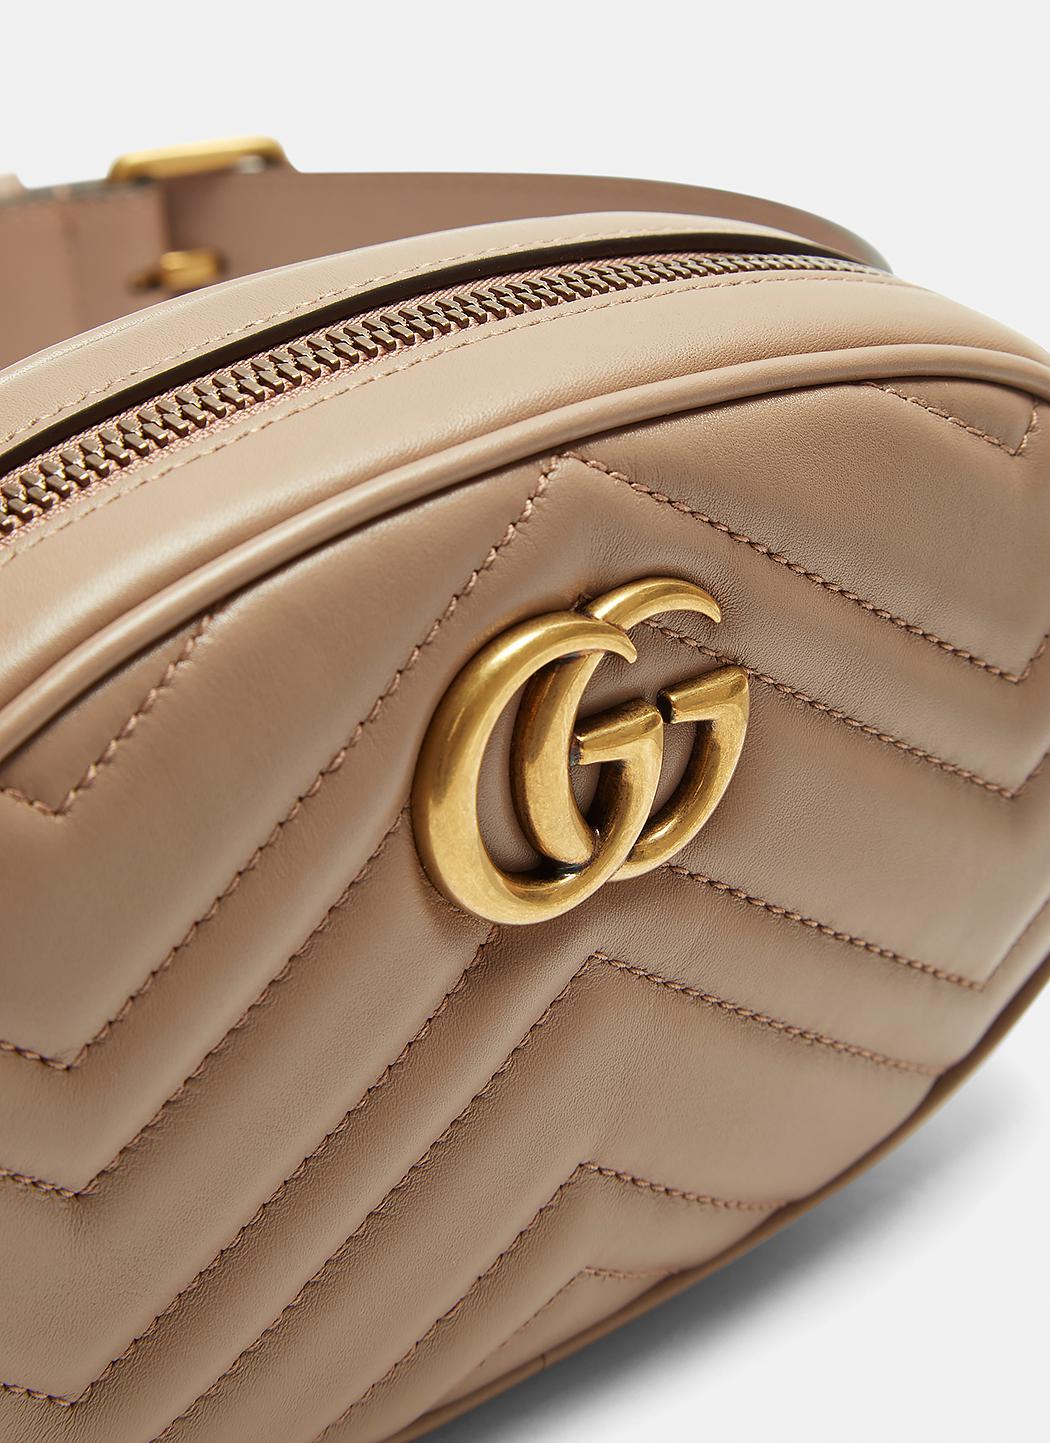 Lyst - Gucci Gg Mini Belt Bag In Brown in Brown